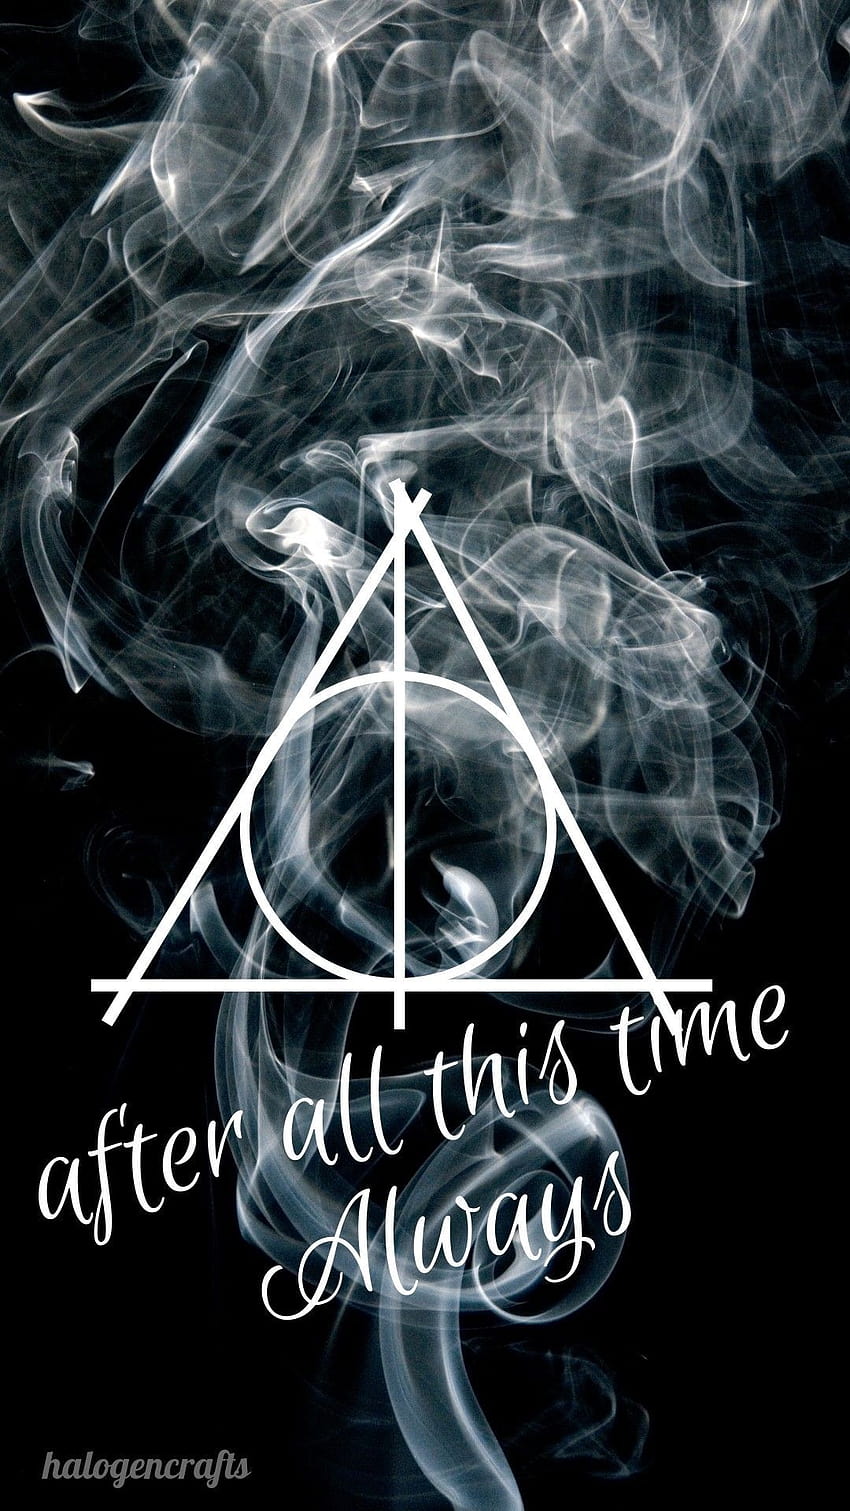 Harry Potter Always, always harry potter HD phone wallpaper | Pxfuel